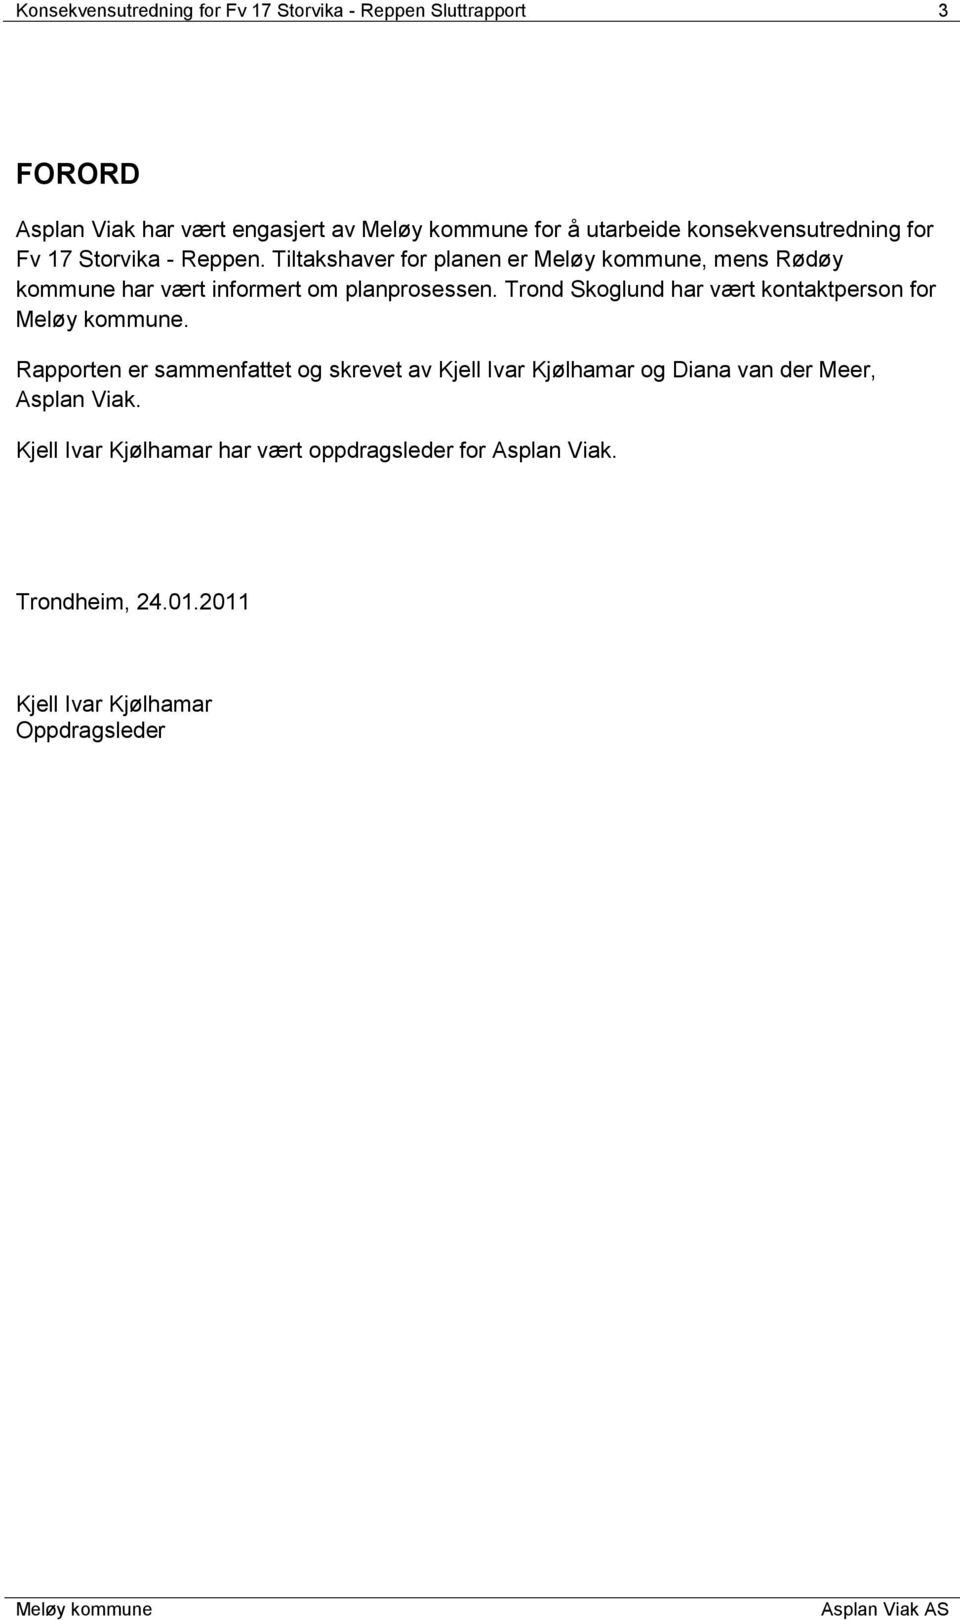 Tiltakshaver for planen er, mens Rødøy kommune har vært informert om planprosessen. Trond Skoglund har vært kontaktperson for.